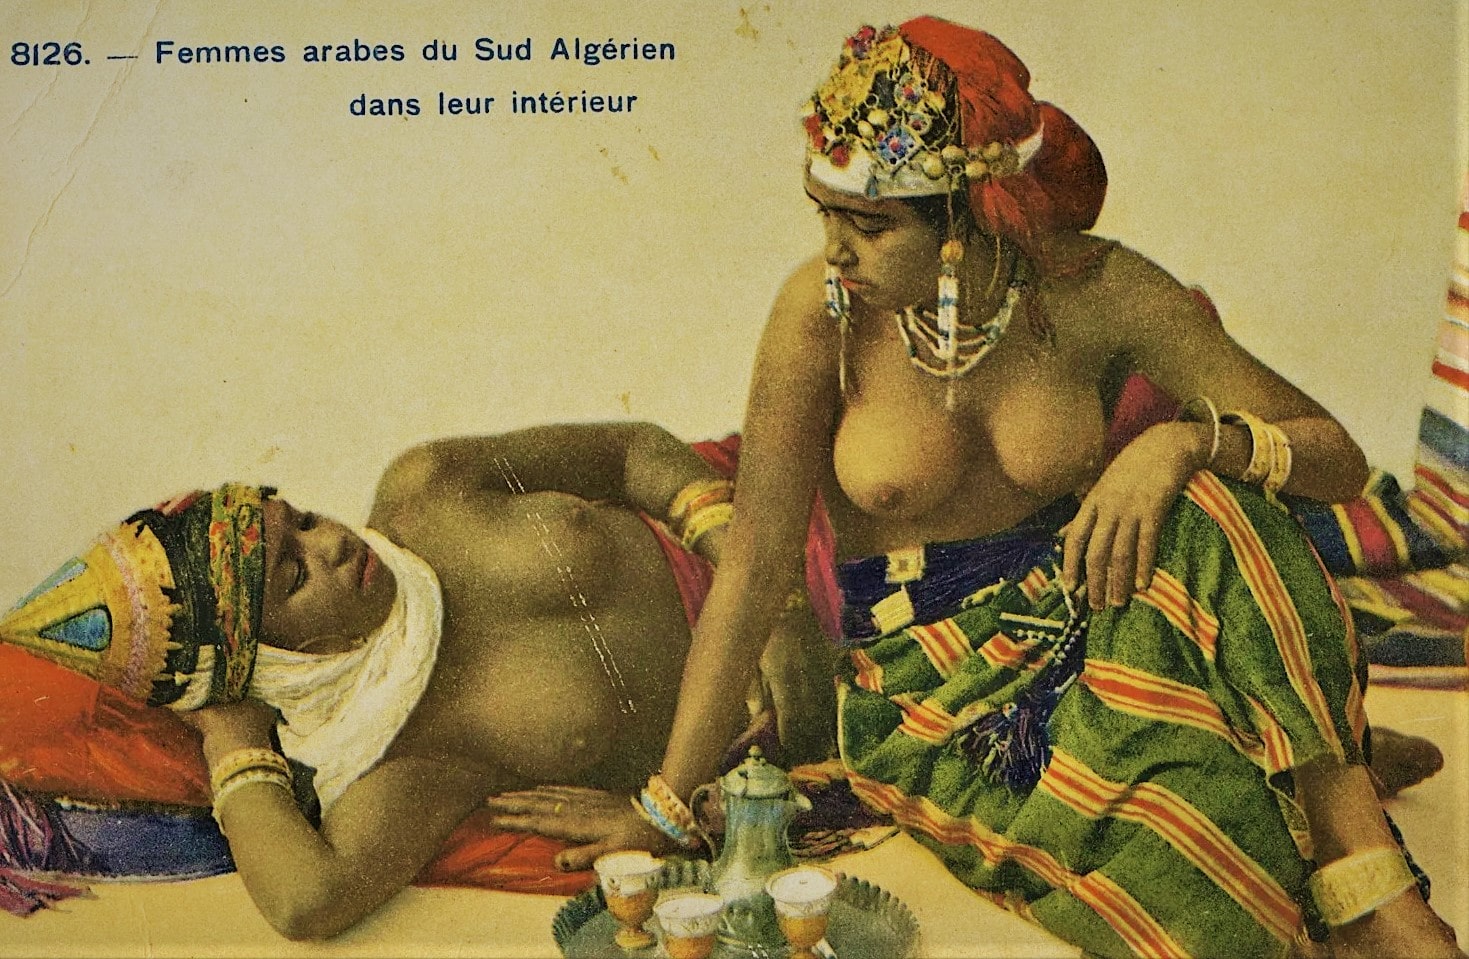 deux odalisques algériennes